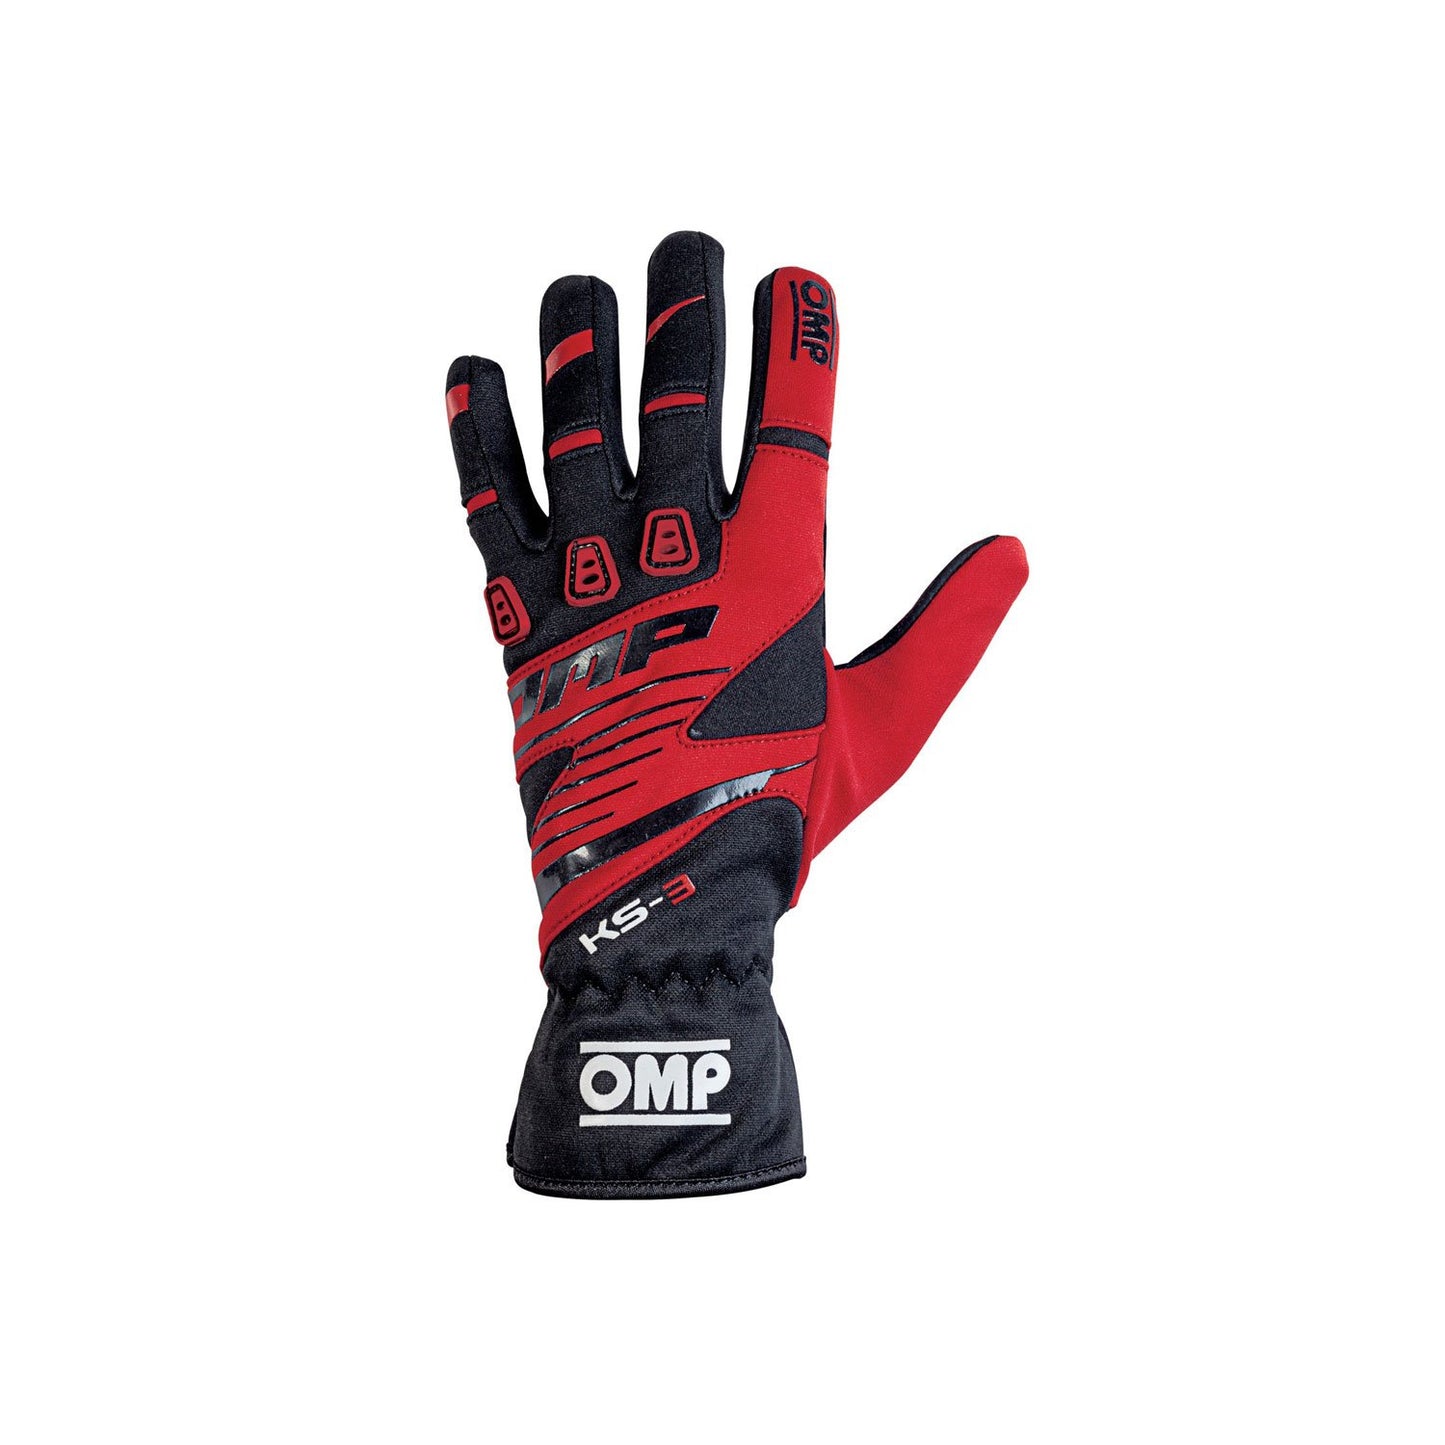 OMP KS-3 MY18 Karting Gloves